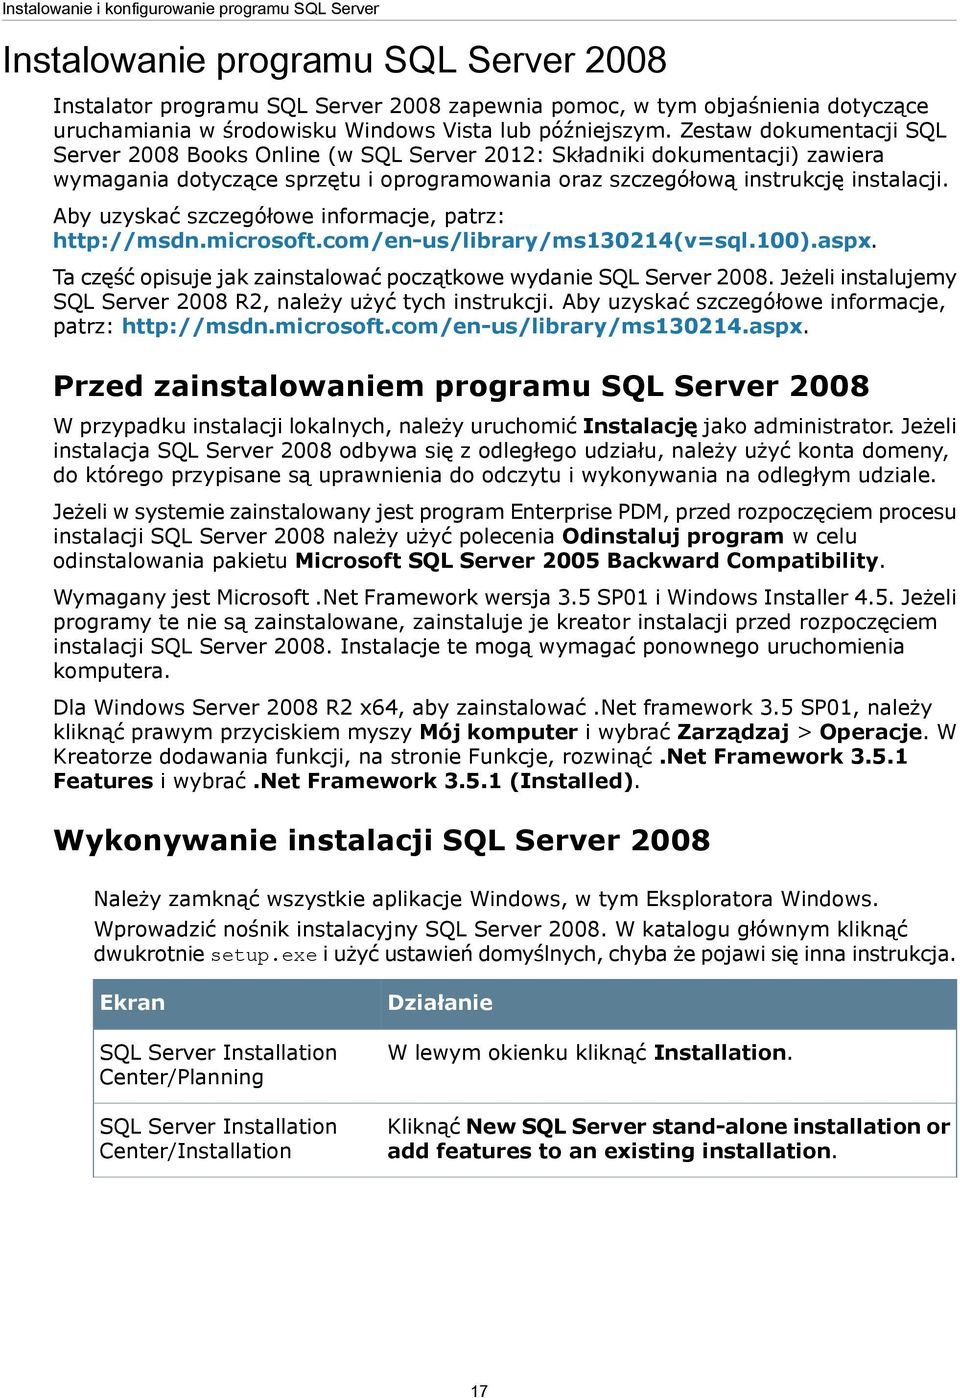 Zestaw dokumentacji SQL Server 2008 Books Online (w SQL Server 2012: Składniki dokumentacji) zawiera wymagania dotyczące sprzętu i oprogramowania oraz szczegółową instrukcję instalacji.